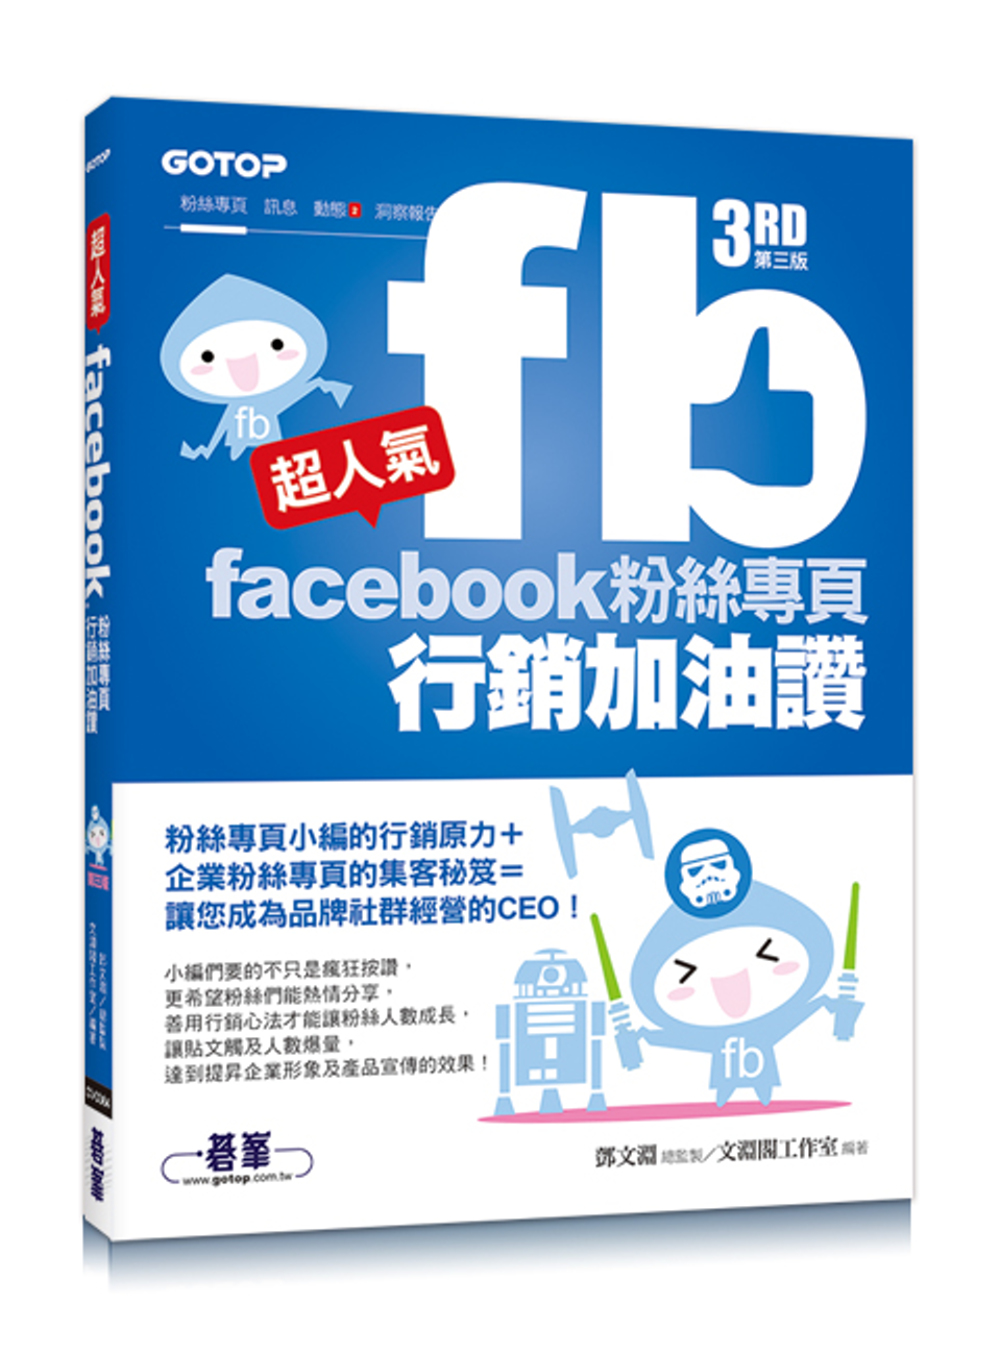 超人氣Facebook粉絲專頁行銷加油讚 (第三版) - 粉絲專頁小編的行銷原力 + 企業粉絲專頁的集客秘笈 = 讓您成為品牌社群經營的 CEO！